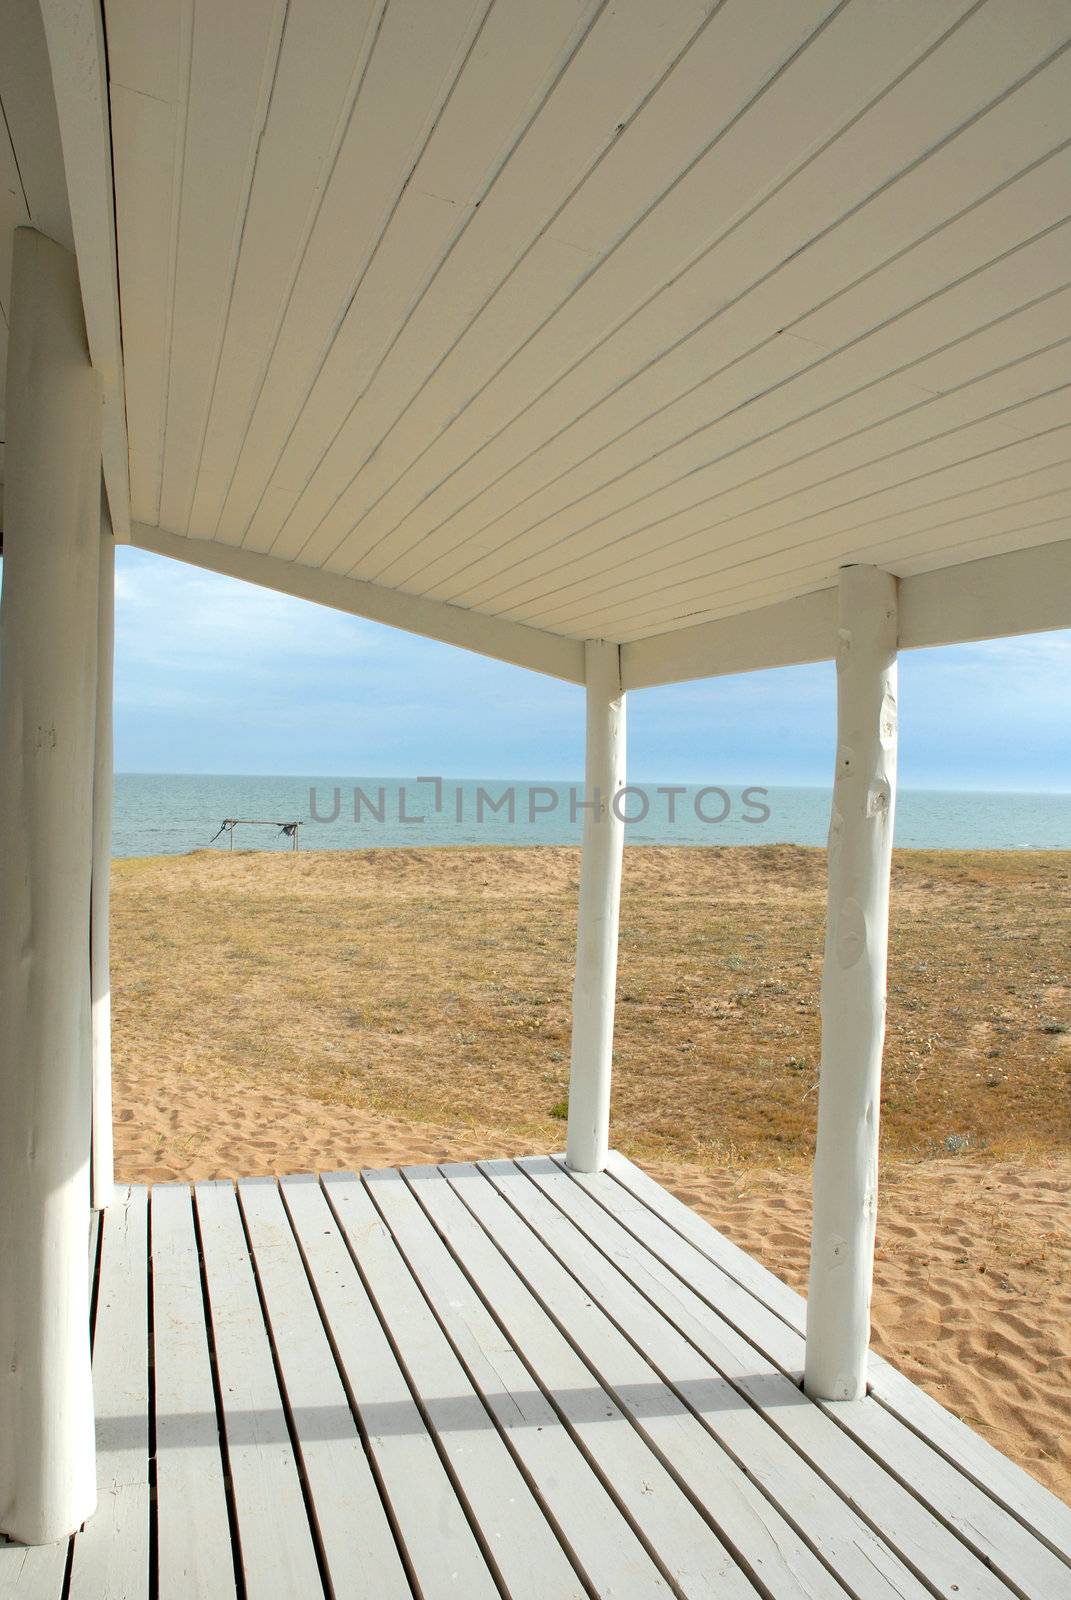 Serenity white porch at seashore by cienpies